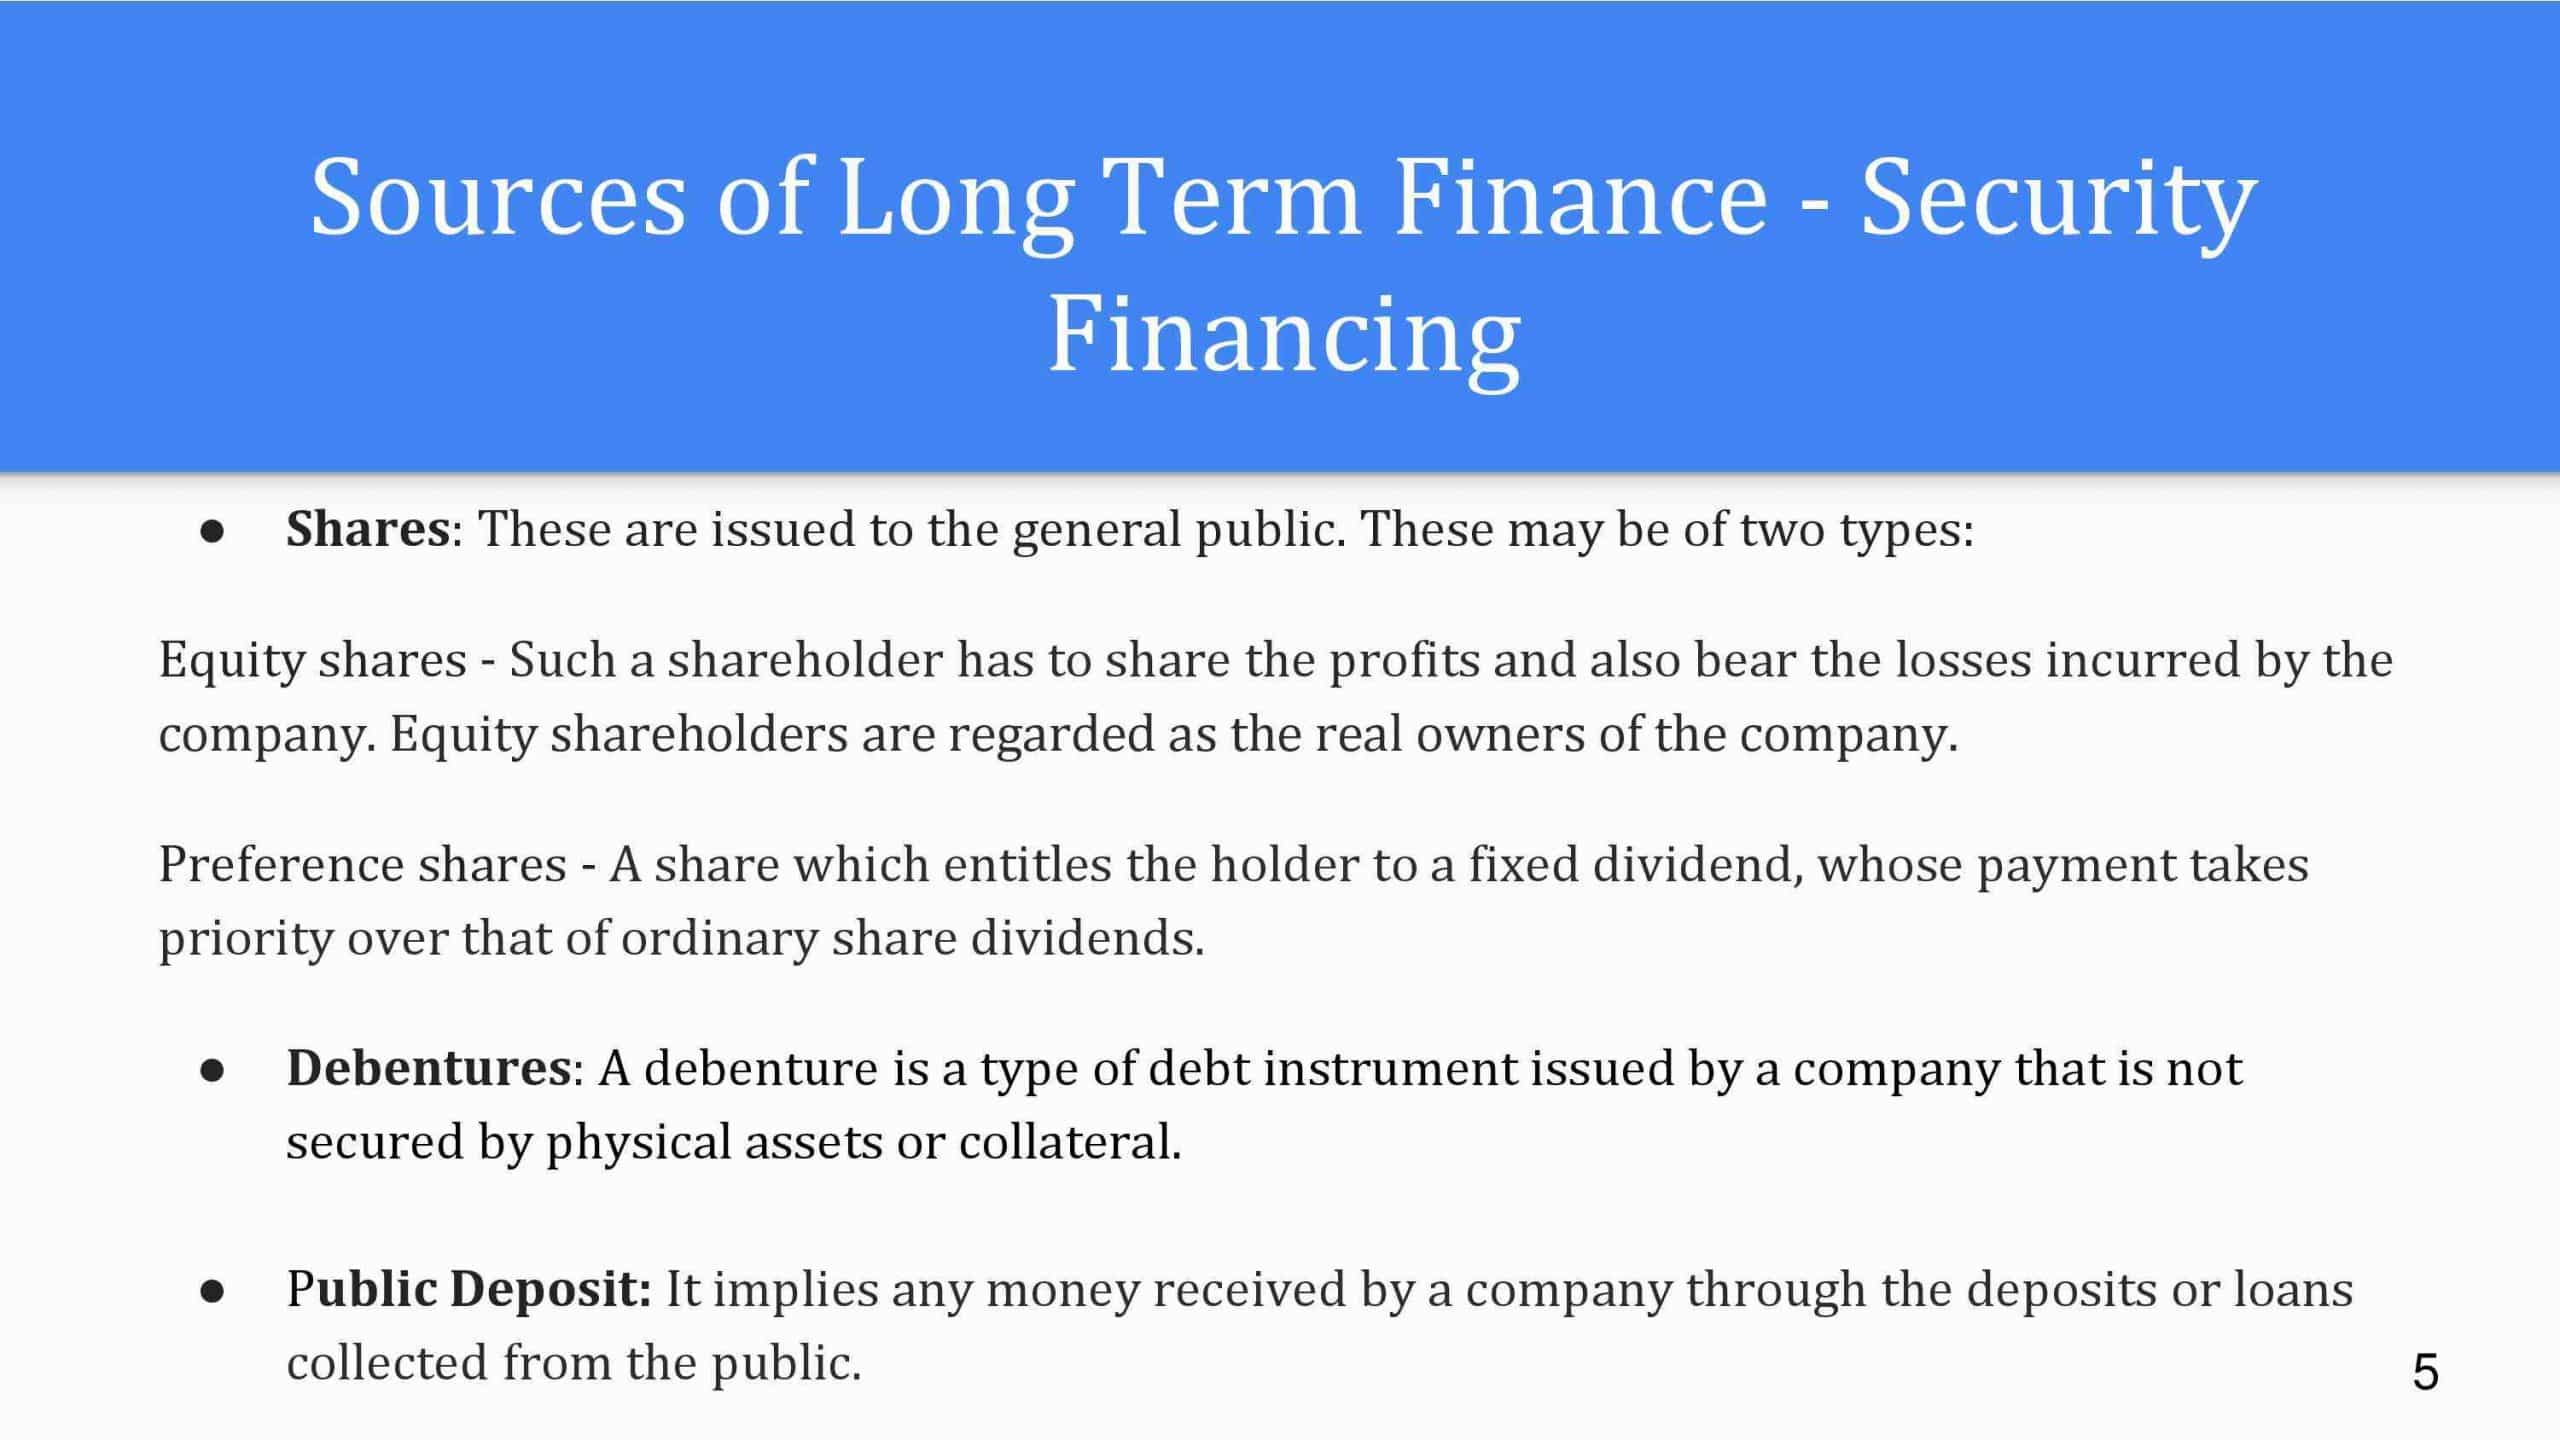 Quels sont les deux sources de financement à long terme pour les entreprises ?